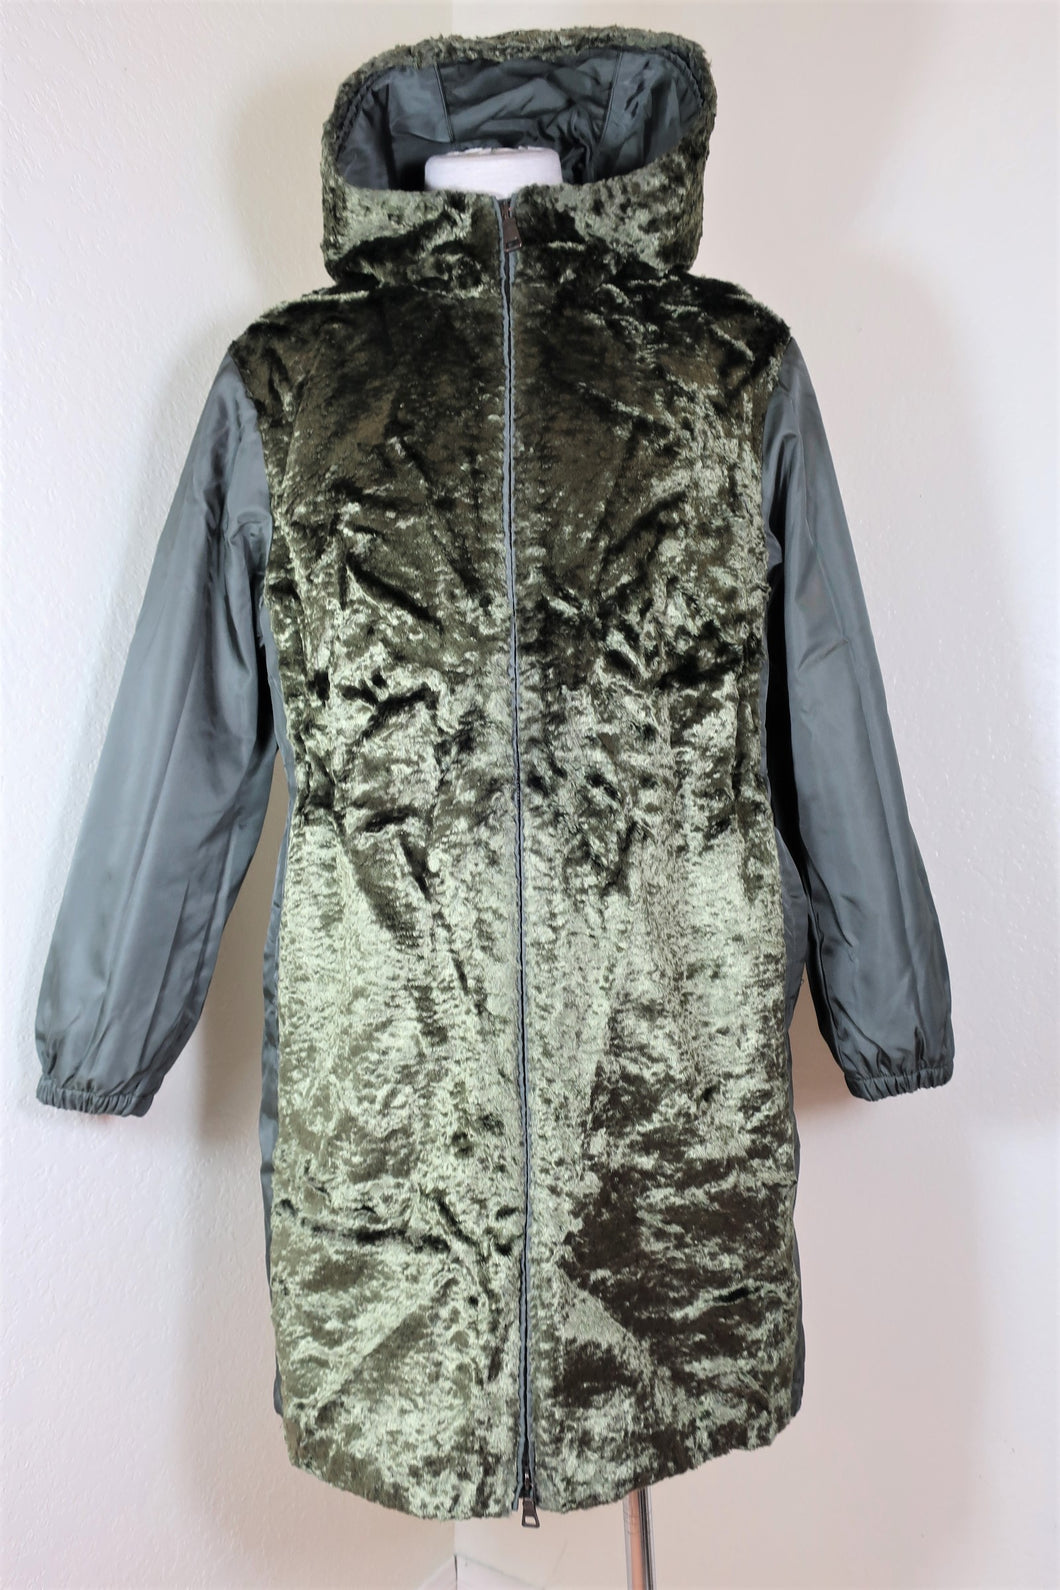 PRADA Nylon Glossy Puffy Thick Hooded Coat Jacket Sz 38 7 8